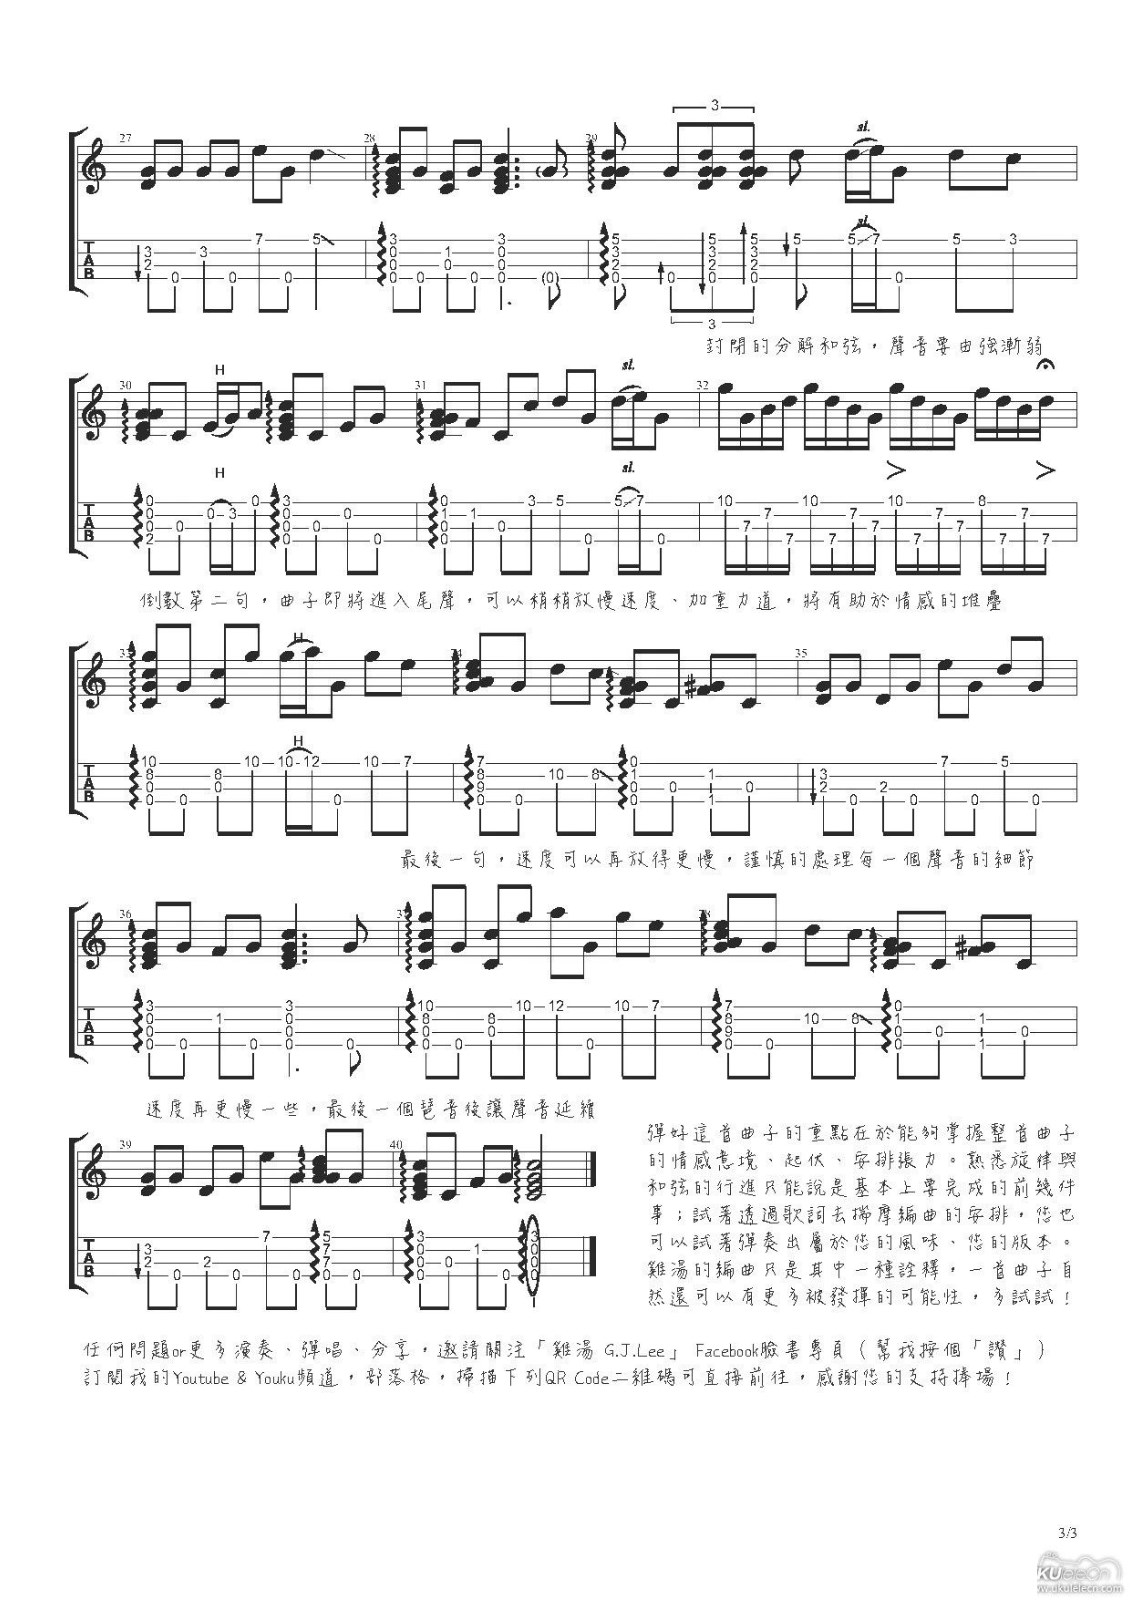 G.J Lee鸡汤老师改编的一首台湾地区的经典民谣《望春风》 ukule...-C大调音乐网